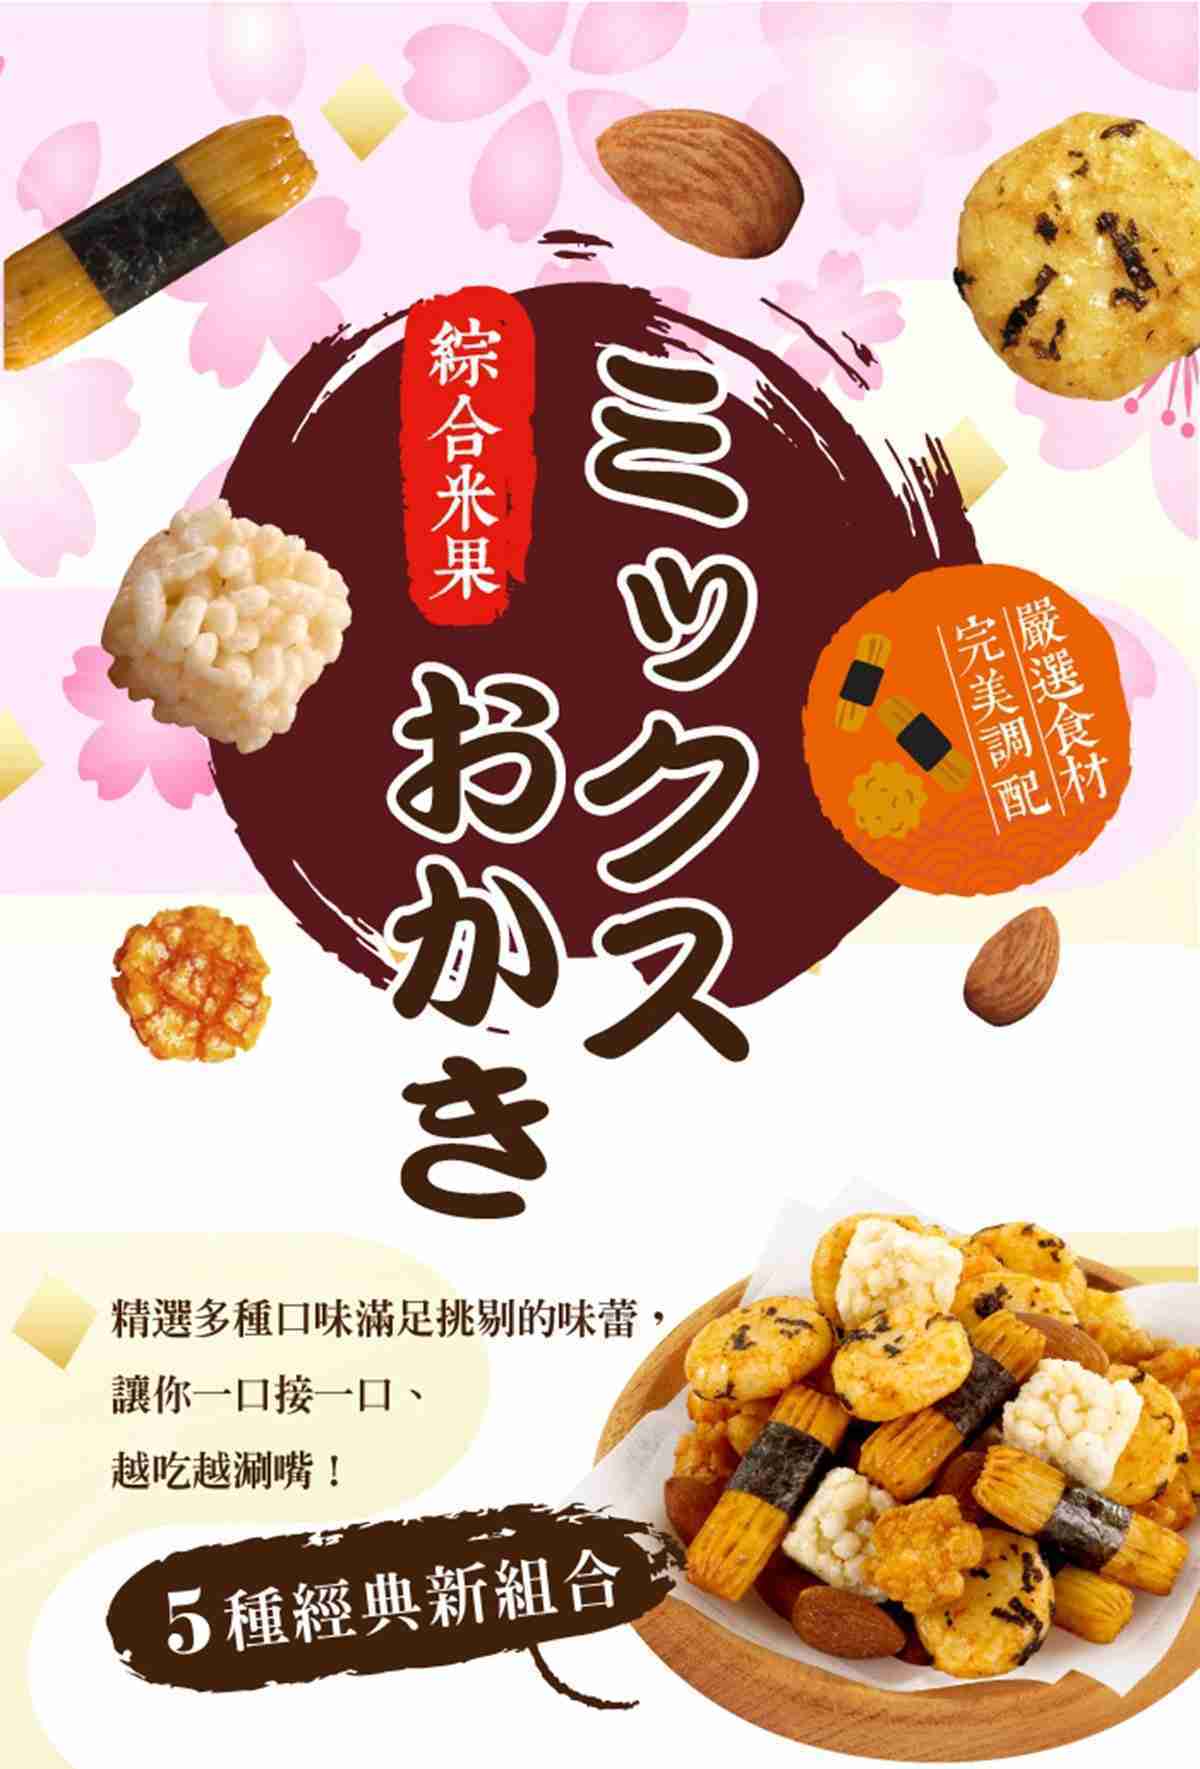 【翠菓子】 航空米果綜合米果禮盒 COSTCO 好市多款 翠果子 豆之家